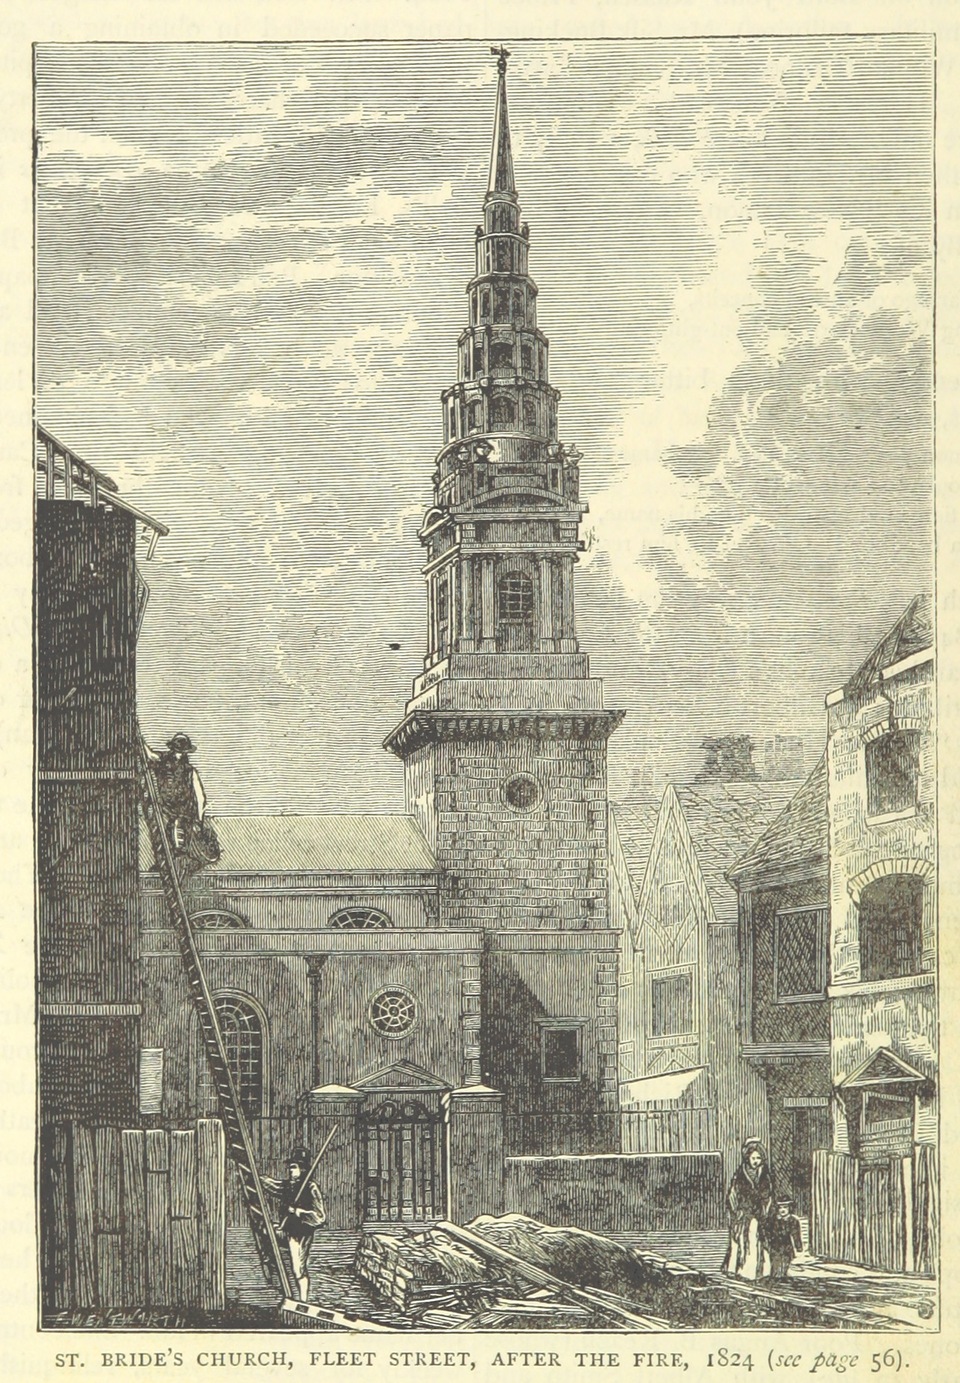 A londoni St. Bride's Church 1824-ben, metszet. Forrás: Wikipédia